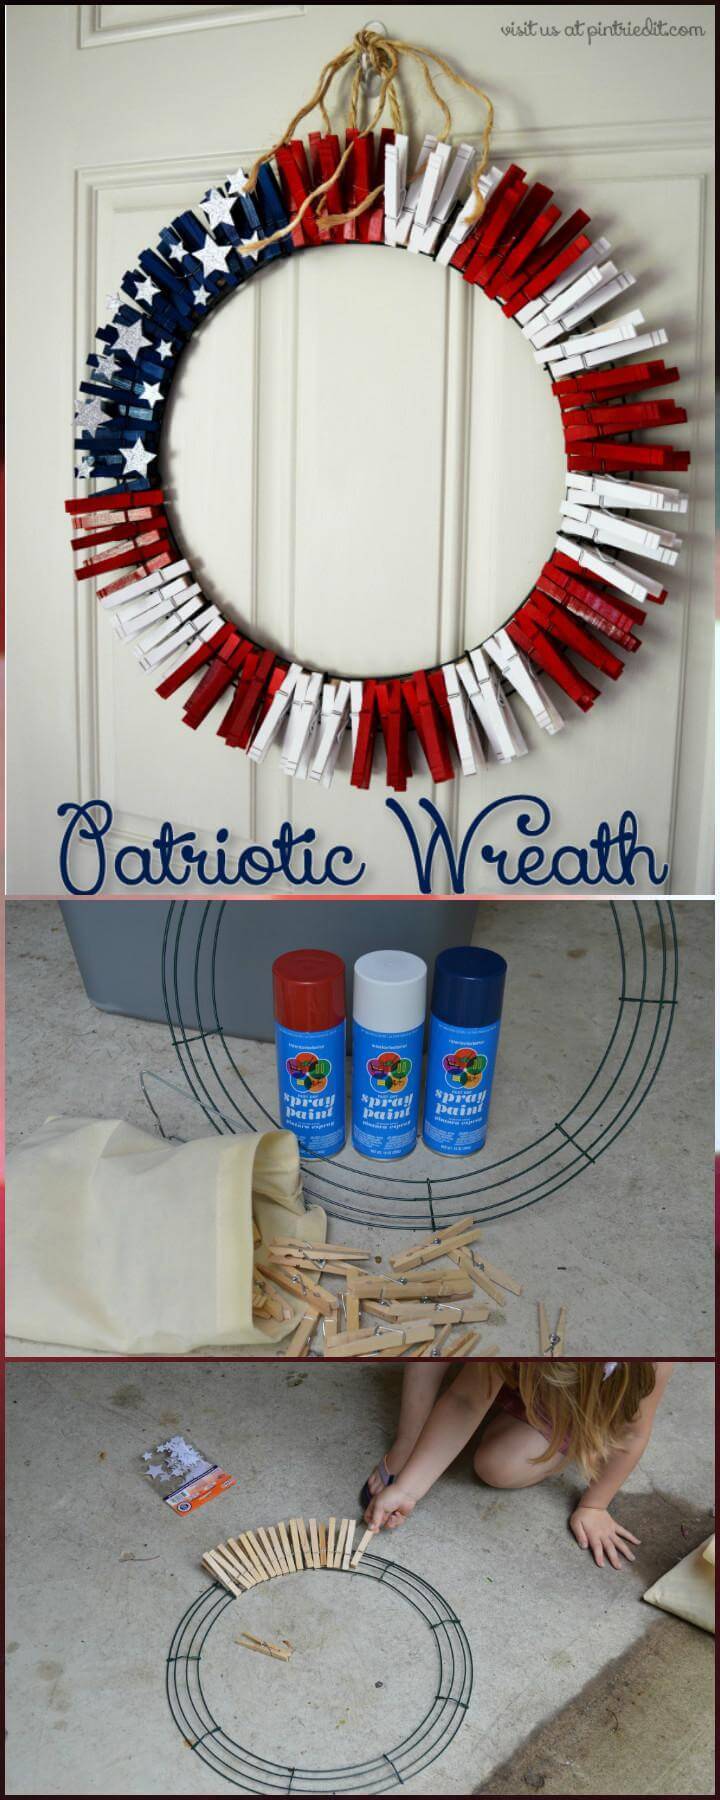 DIY Clothes Pins Patriotic Wreath